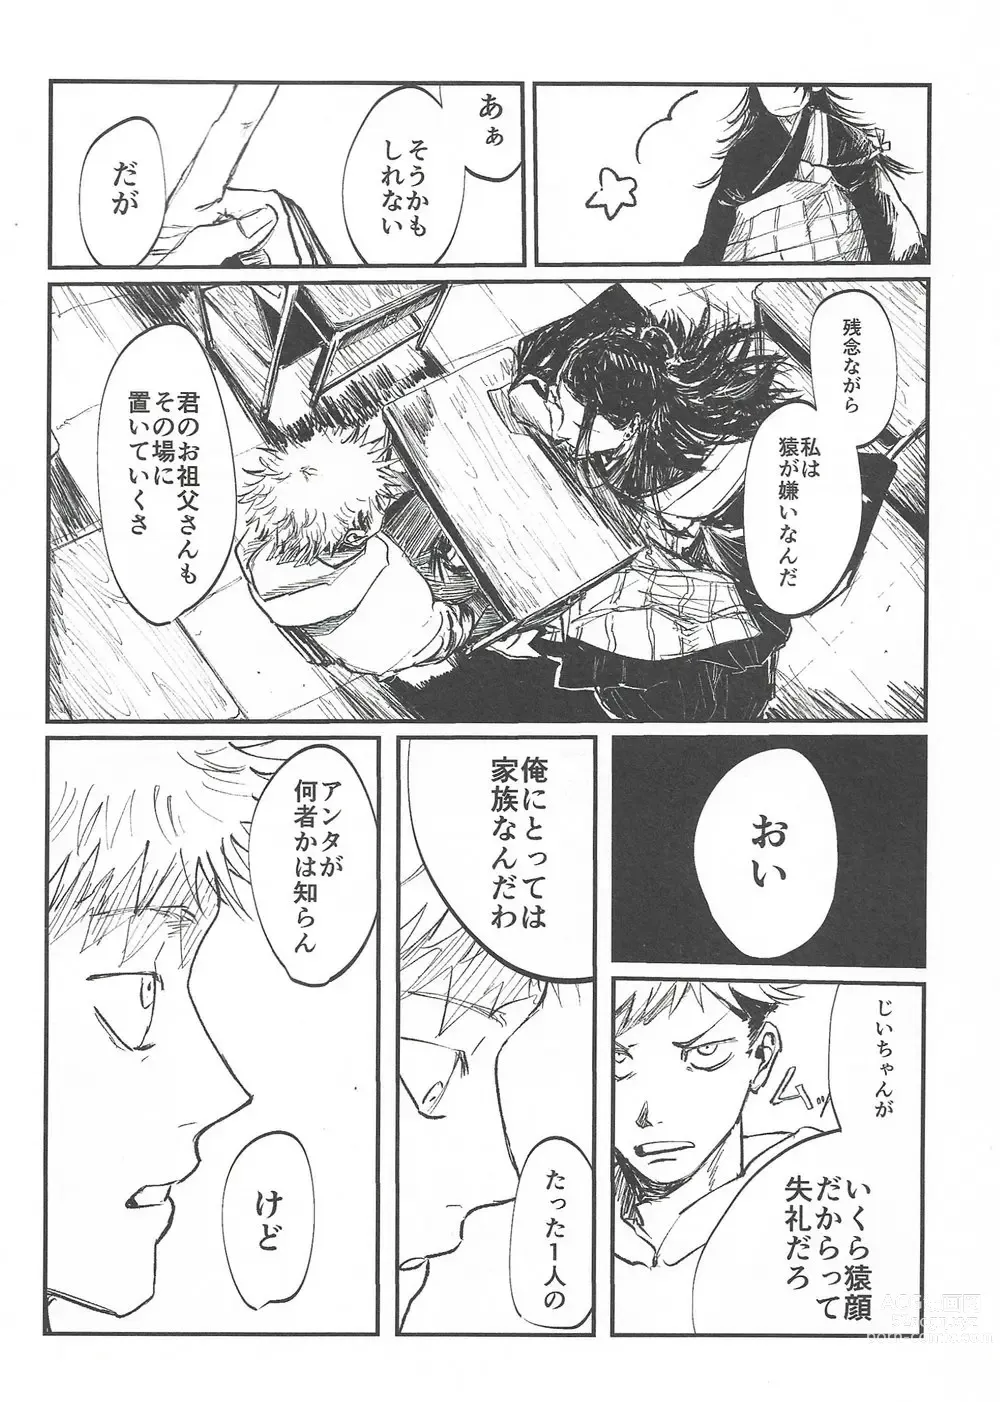 Page 7 of doujinshi Rakuen no Niwa